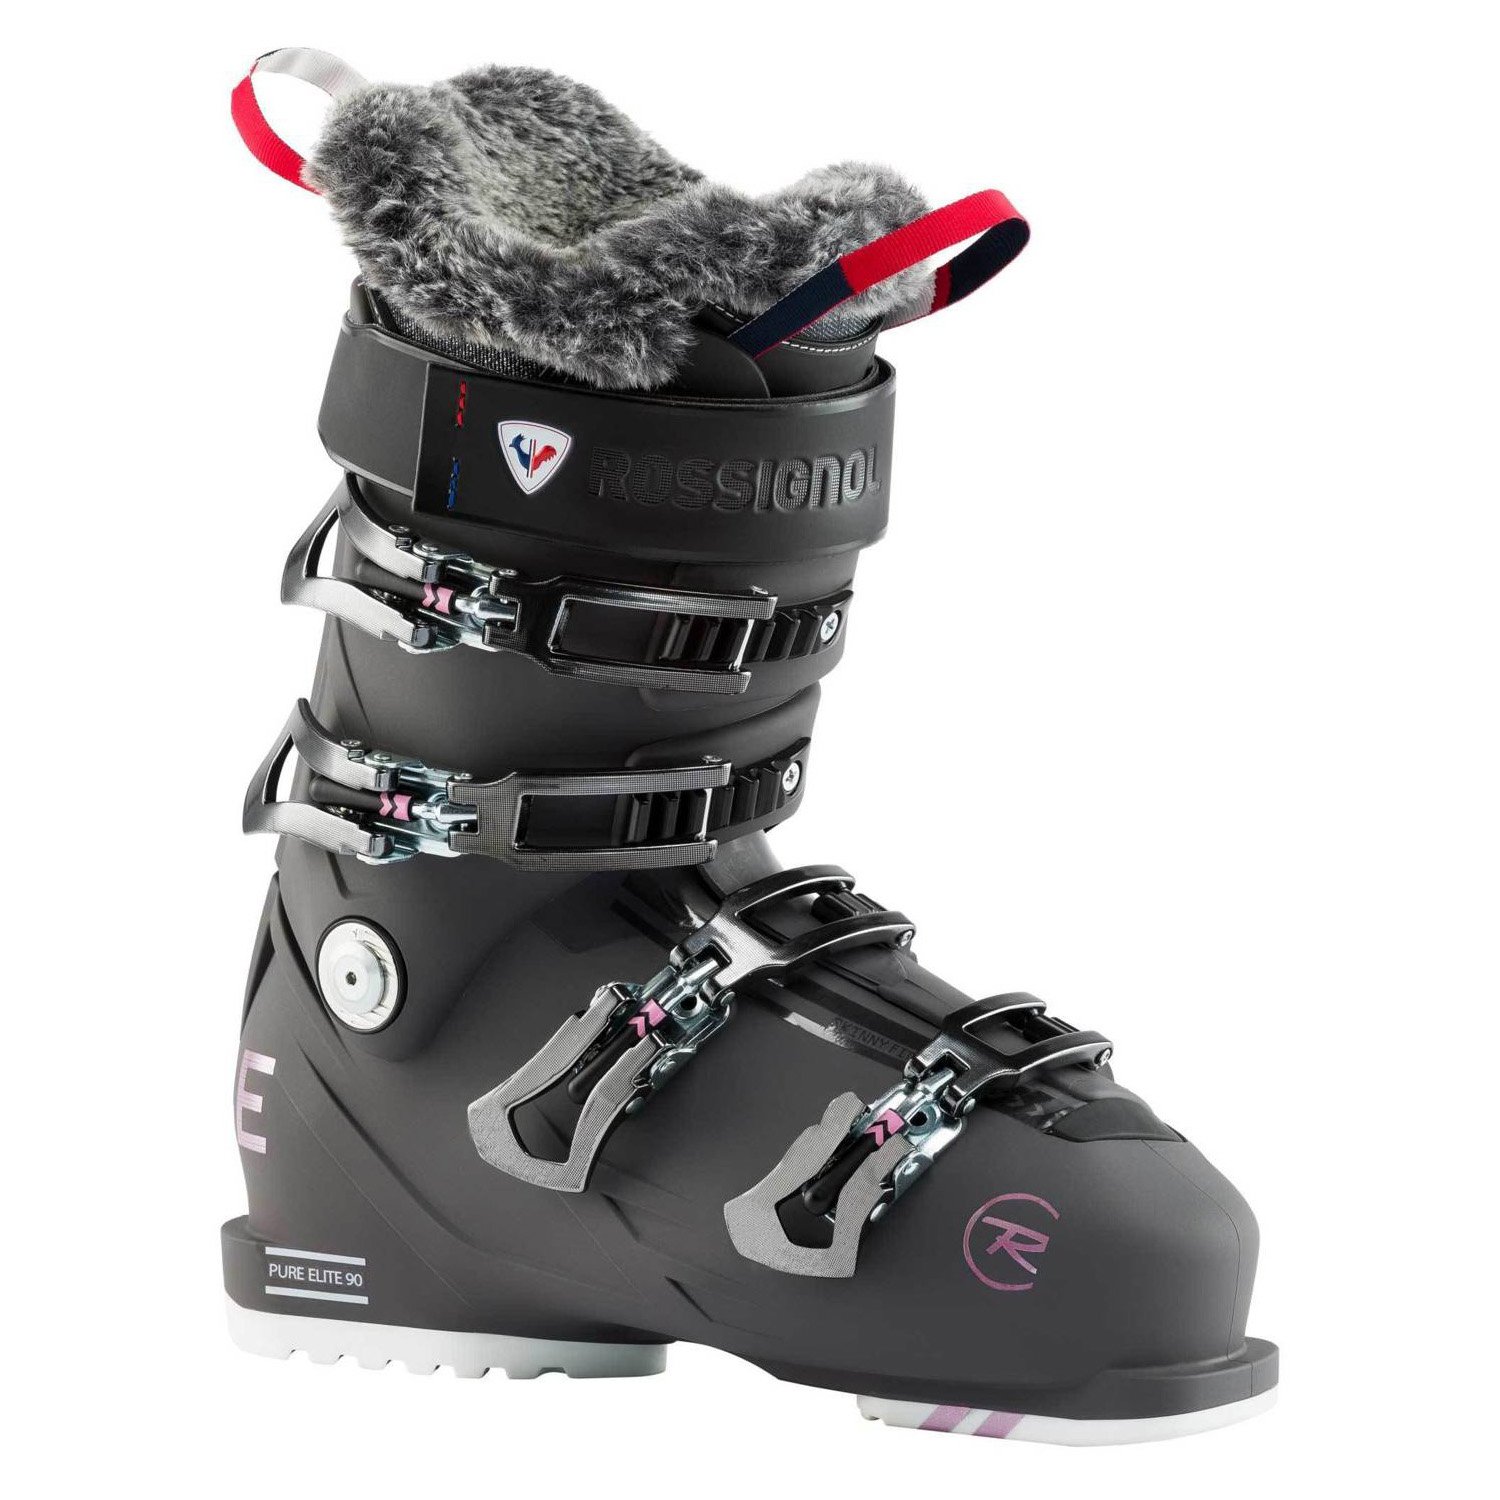 Rossignol Pure Elite 90 Kayak Ayakkabısı - GRİ - 1